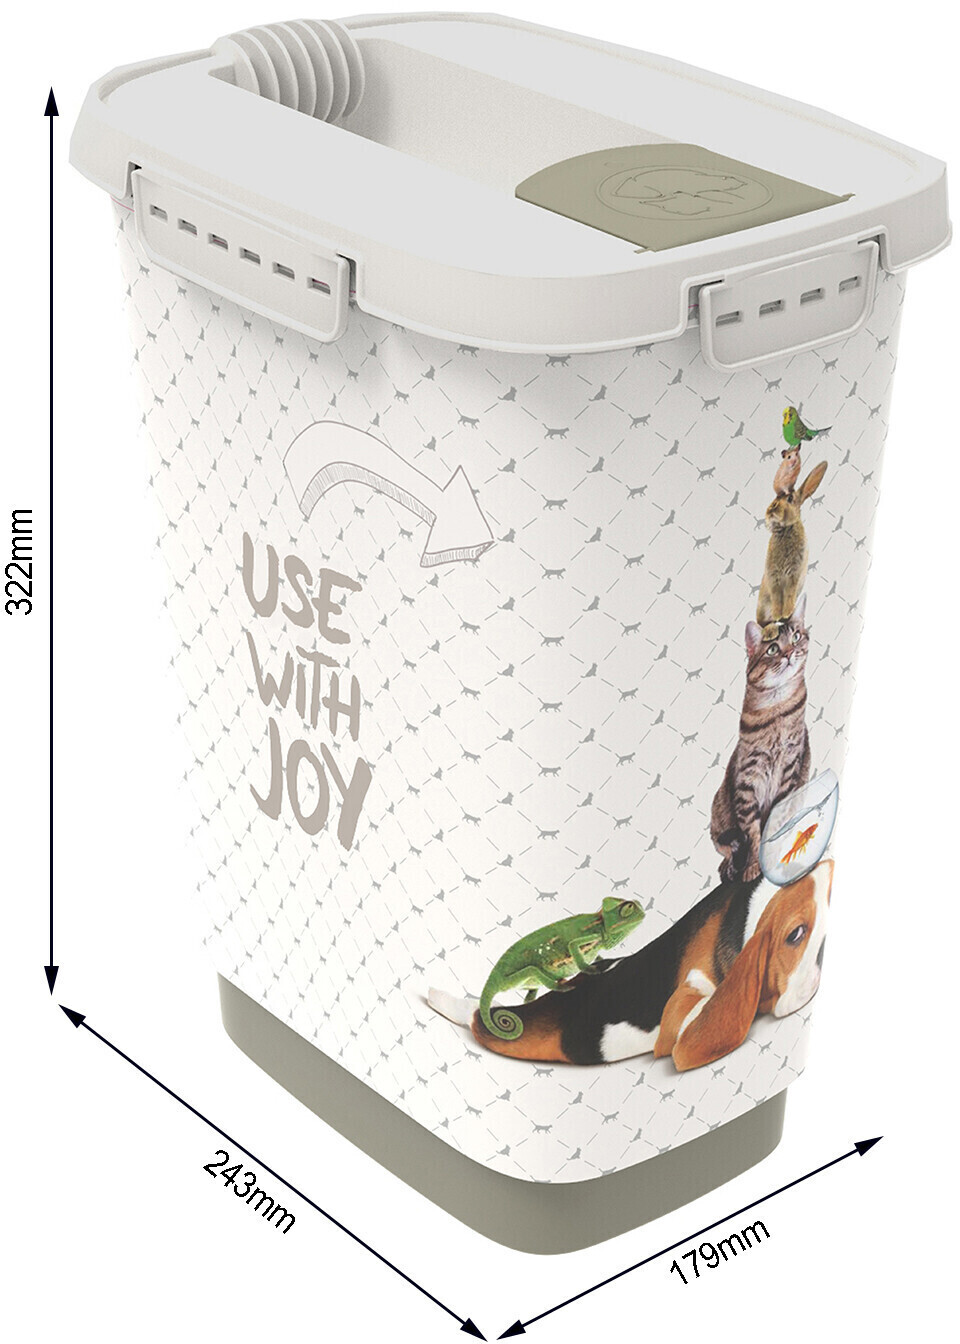 Rotho Dry food container Use with joy 10L au meilleur prix sur